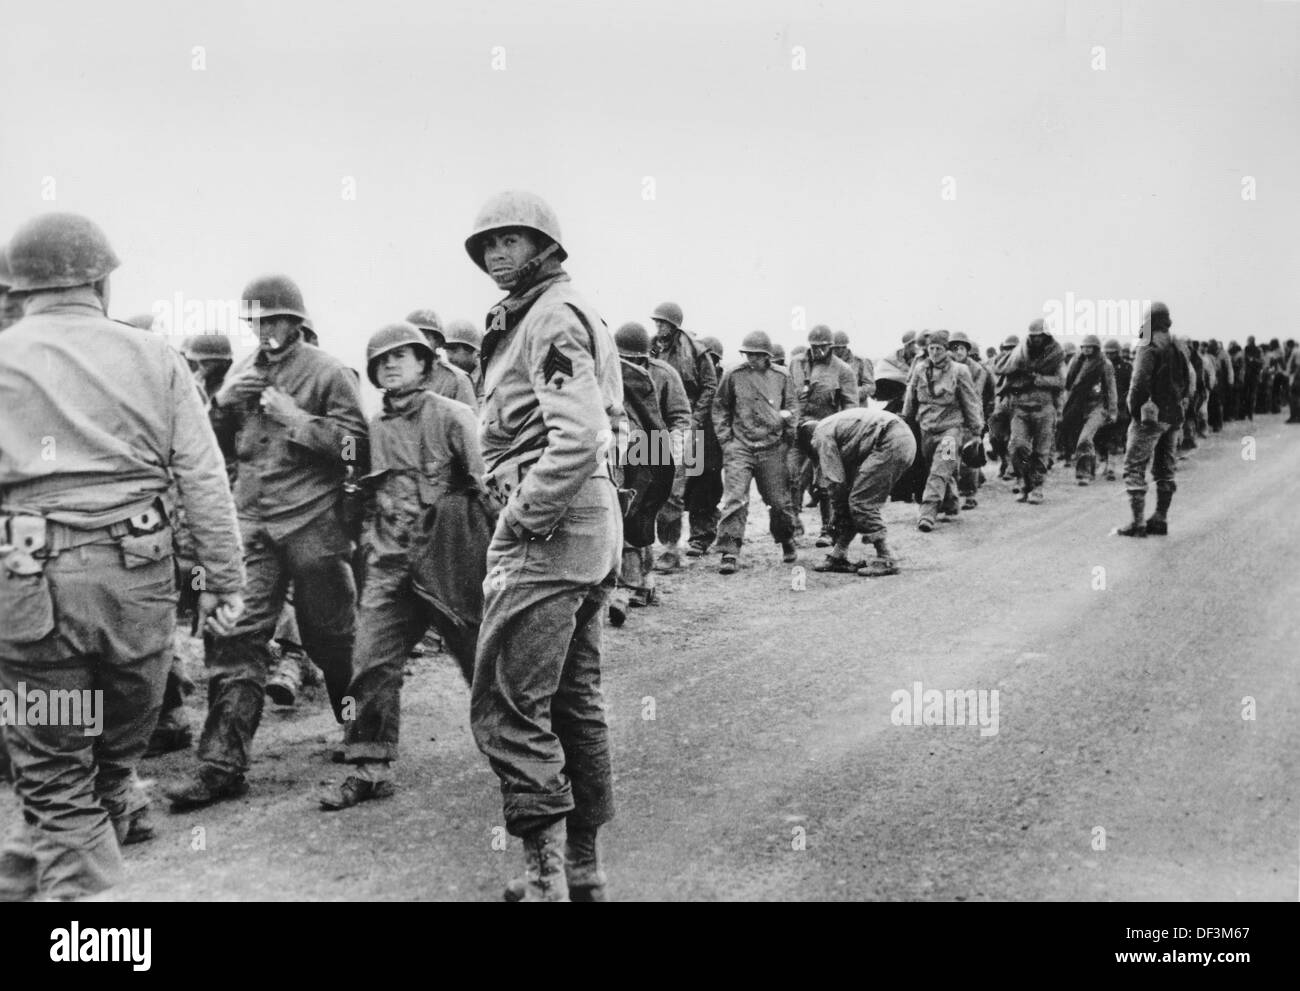 Das Bild von der Nazi-Propaganda! zeigt gefangenen amerikanischen Soldaten auf einem Sammelplatz in Tunesien, am 8. März 1943 veröffentlicht. Ort unbekannt. Foto: Berliner Verlag/Archiv Stockfoto